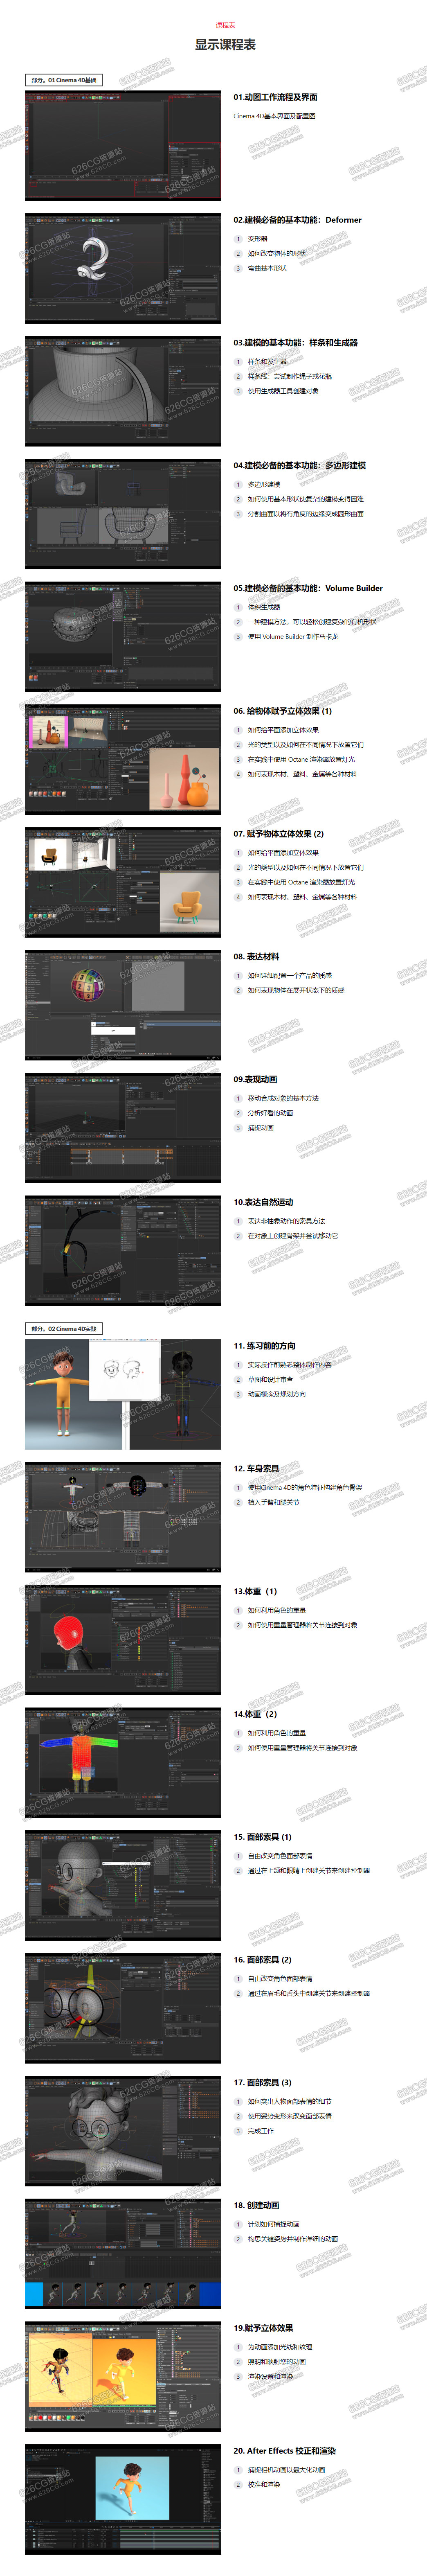 韩国C4D教程 Coloso C4D基础建模+动画人物绑定教程 中文字幕 626CG资源站